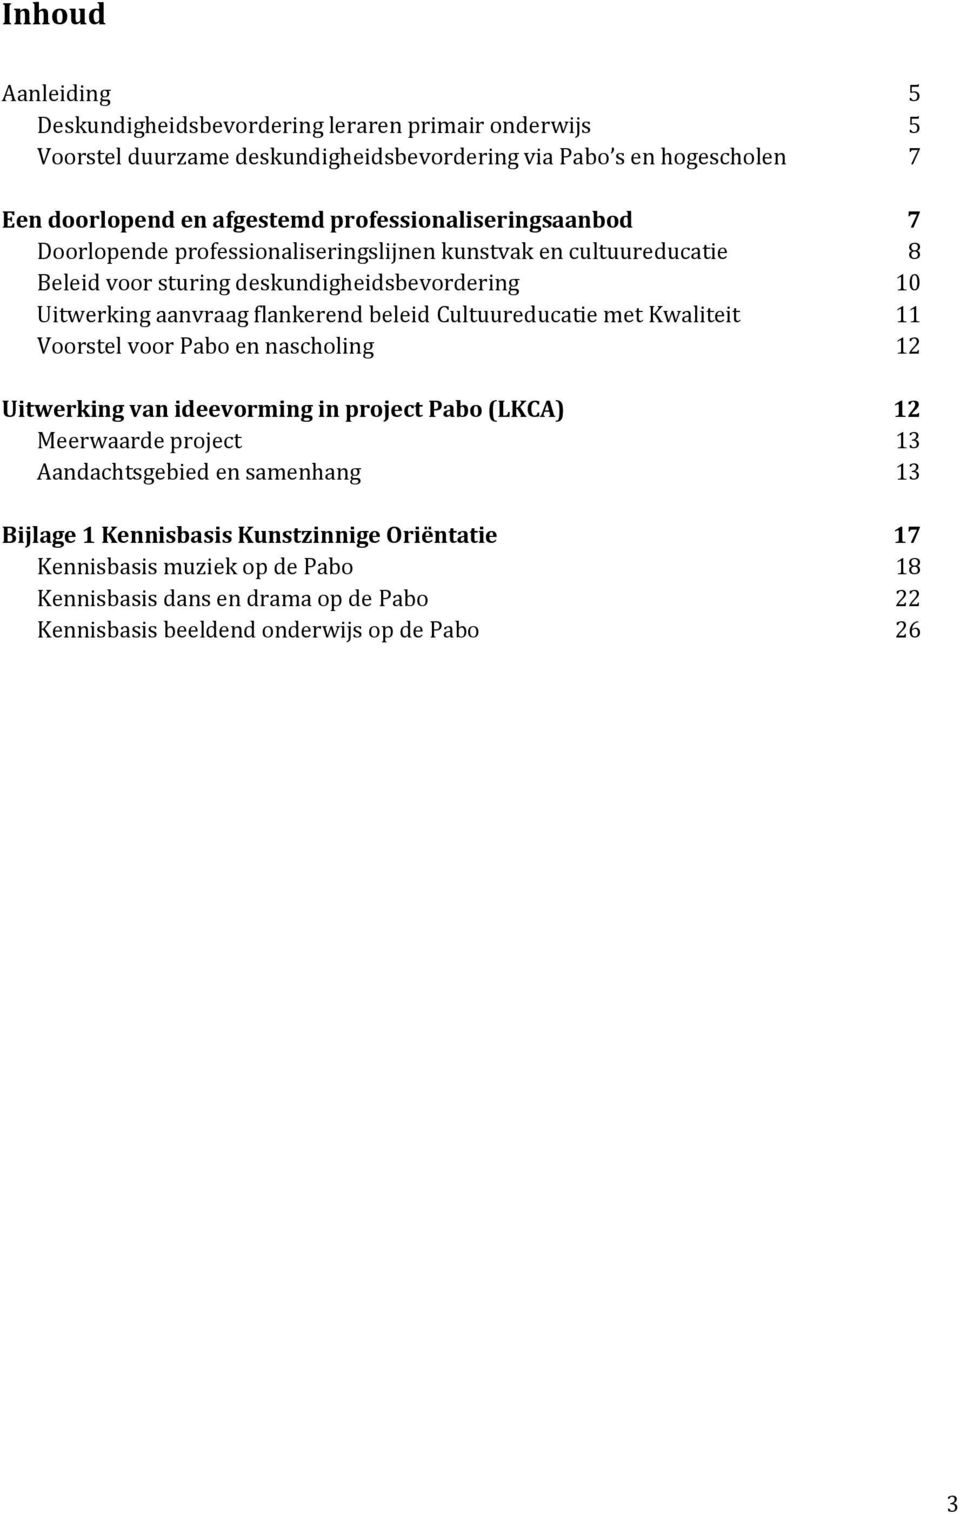 flankerend beleid Cultuureducatie met Kwaliteit 11 Voorstel voor Pabo en nascholing 12 Uitwerking van ideevorming in project Pabo (LKCA) 12 Meerwaarde project 13